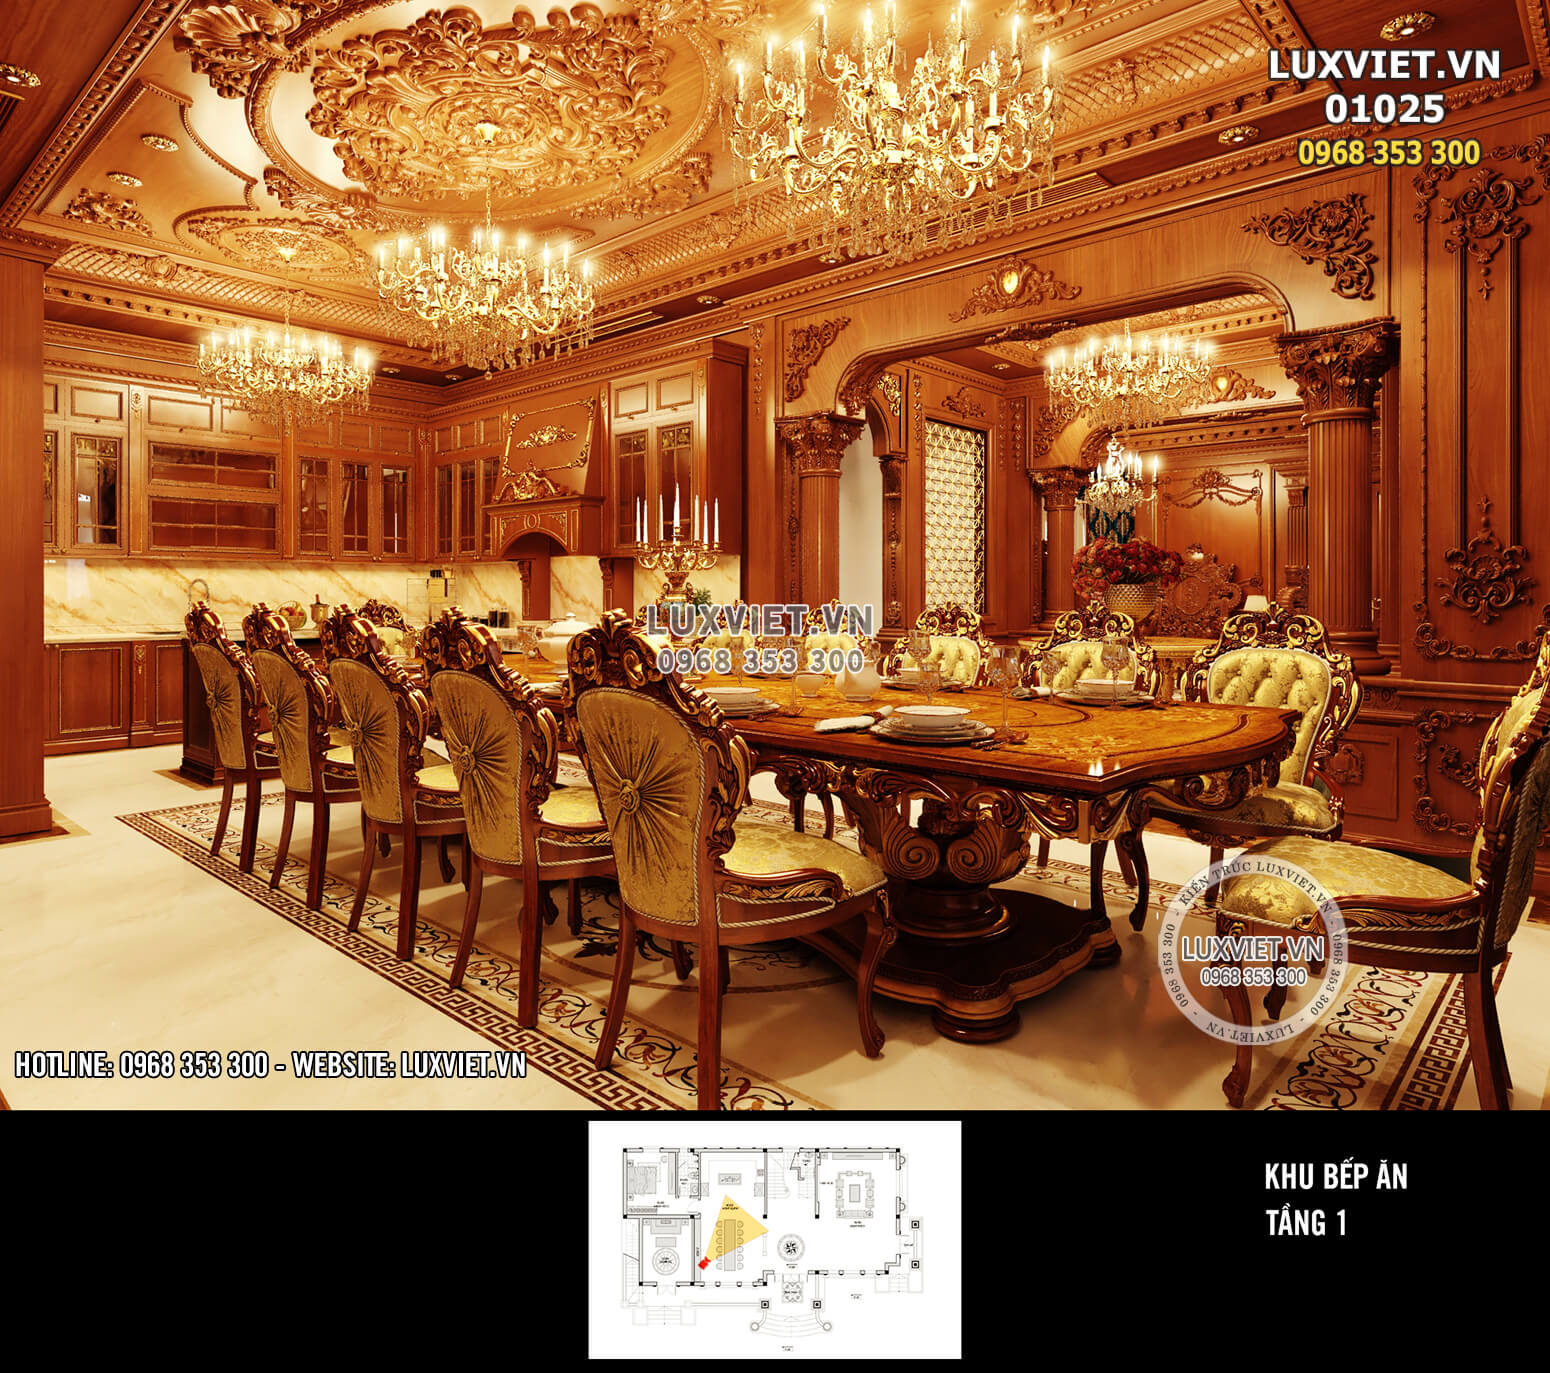 Điểm nhấn trong không gian nội thất phòng bếp chính là bộ bàn ghế được thiết kế theo phong cách hoàng gia